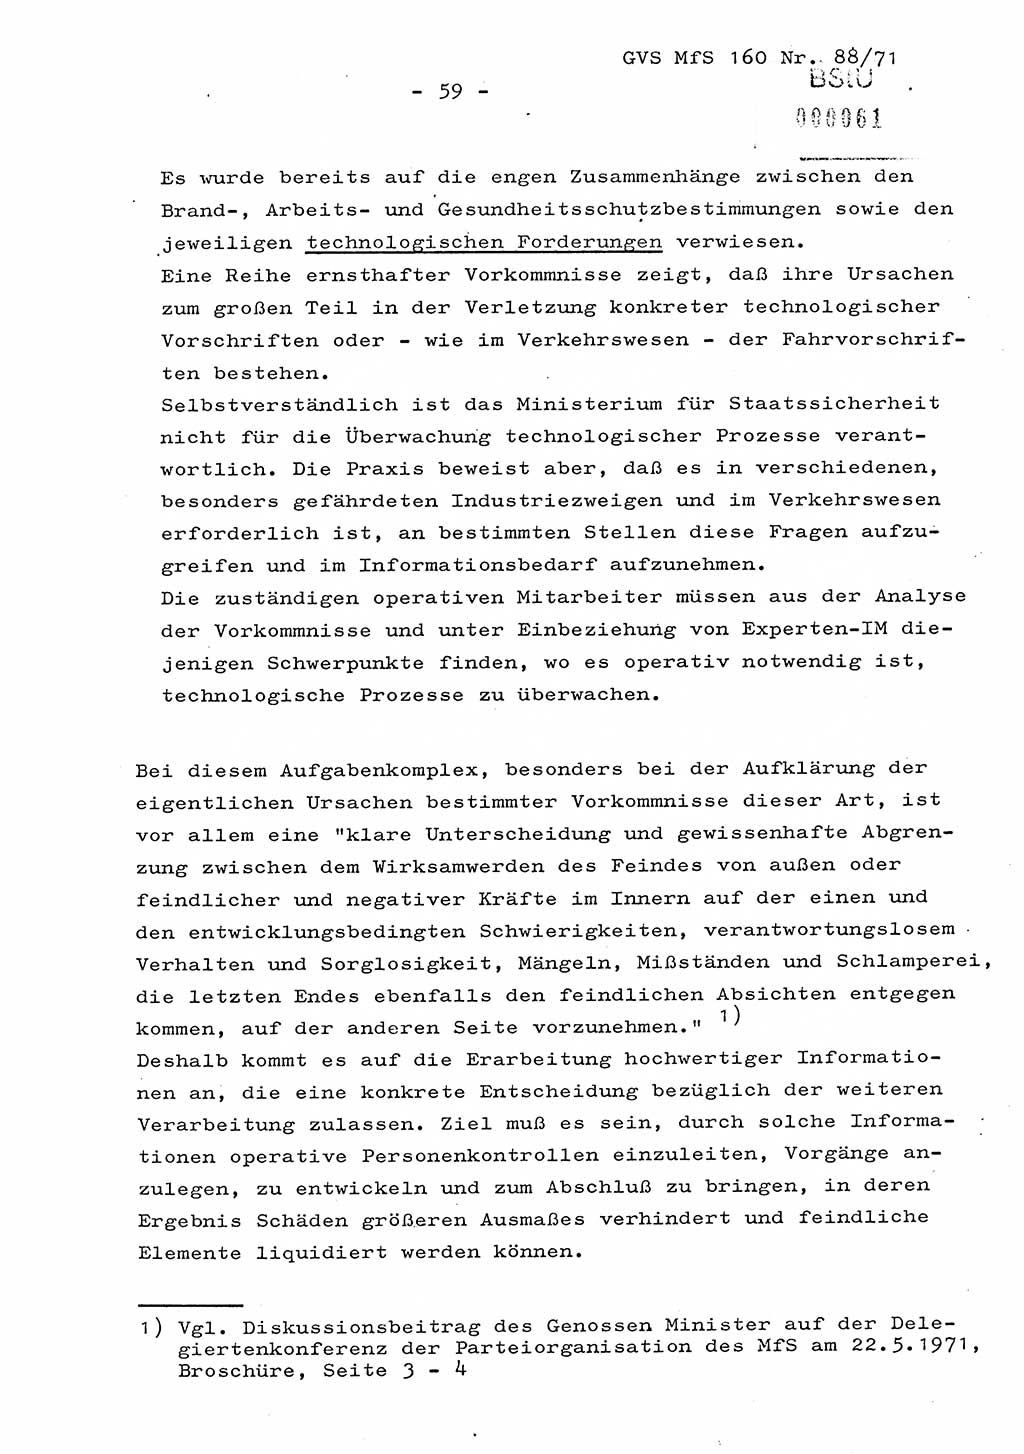 Dissertation Oberstleutnant Josef Schwarz (BV Schwerin), Major Fritz Amm (JHS), Hauptmann Peter Gräßler (JHS), Ministerium für Staatssicherheit (MfS) [Deutsche Demokratische Republik (DDR)], Juristische Hochschule (JHS), Geheime Verschlußsache (GVS) 160-88/71, Potsdam 1972, Seite 59 (Diss. MfS DDR JHS GVS 160-88/71 1972, S. 59)